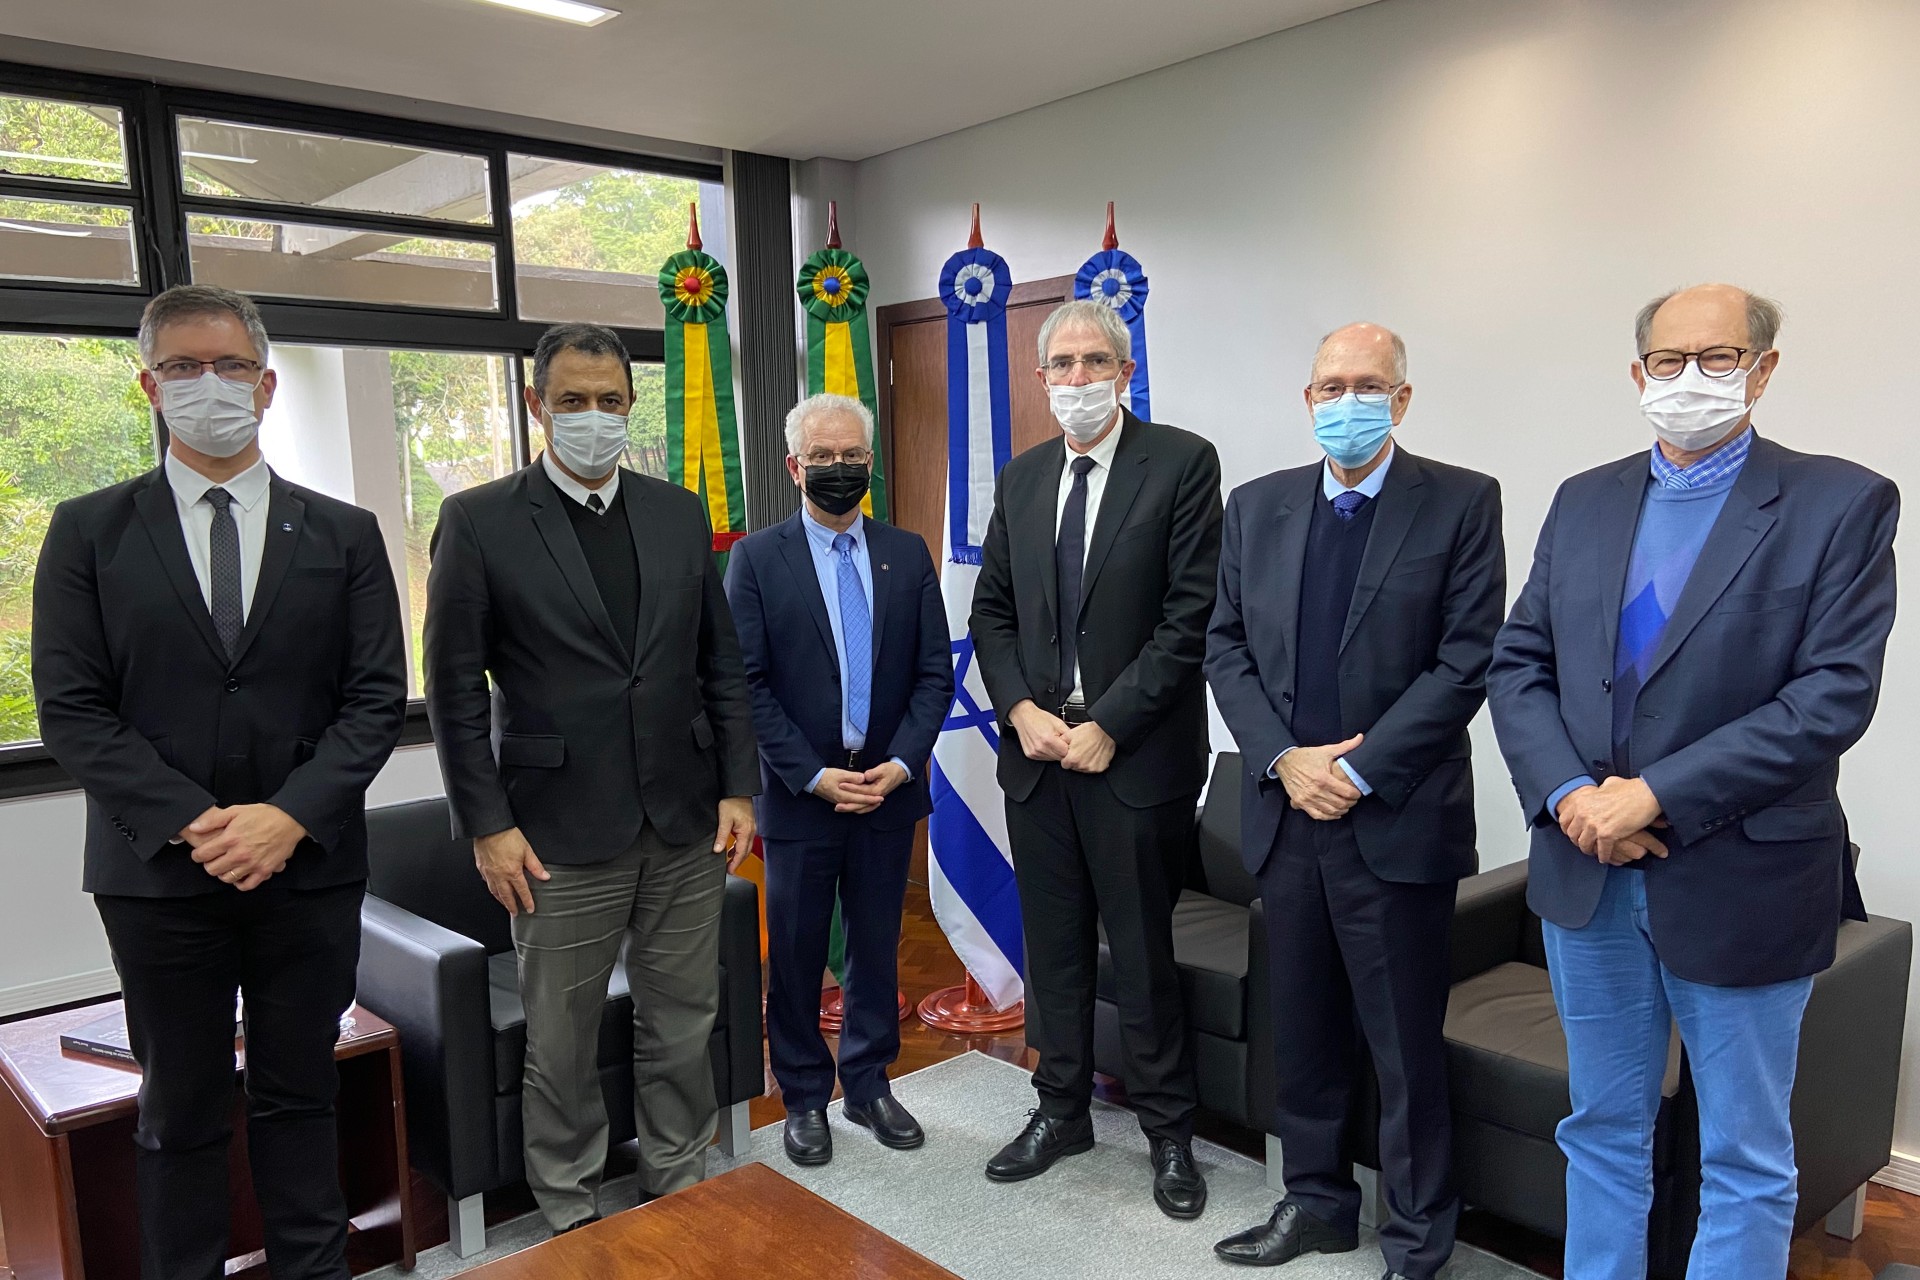 Cônsul Geral de Israel visita Unisinos e Tecnosinos